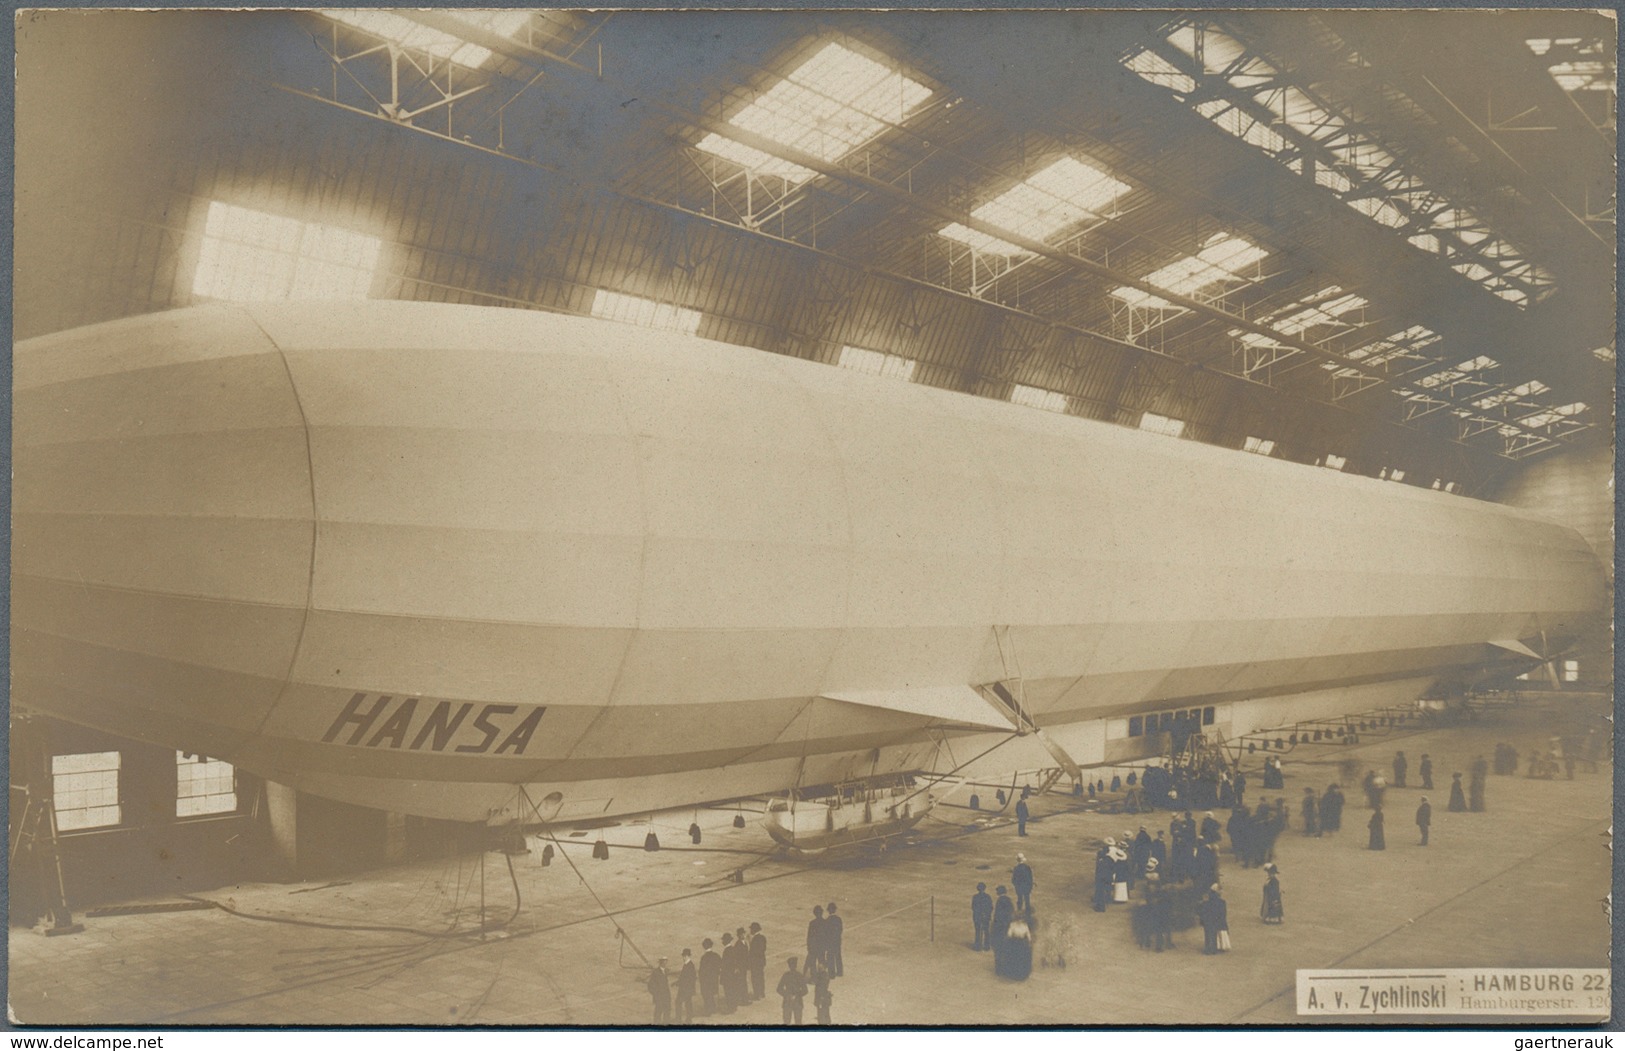 Zeppelinpost Deutschland: Amazing group of ca. 178 Zeppelin postcards mostly Echt Fotos from the pio